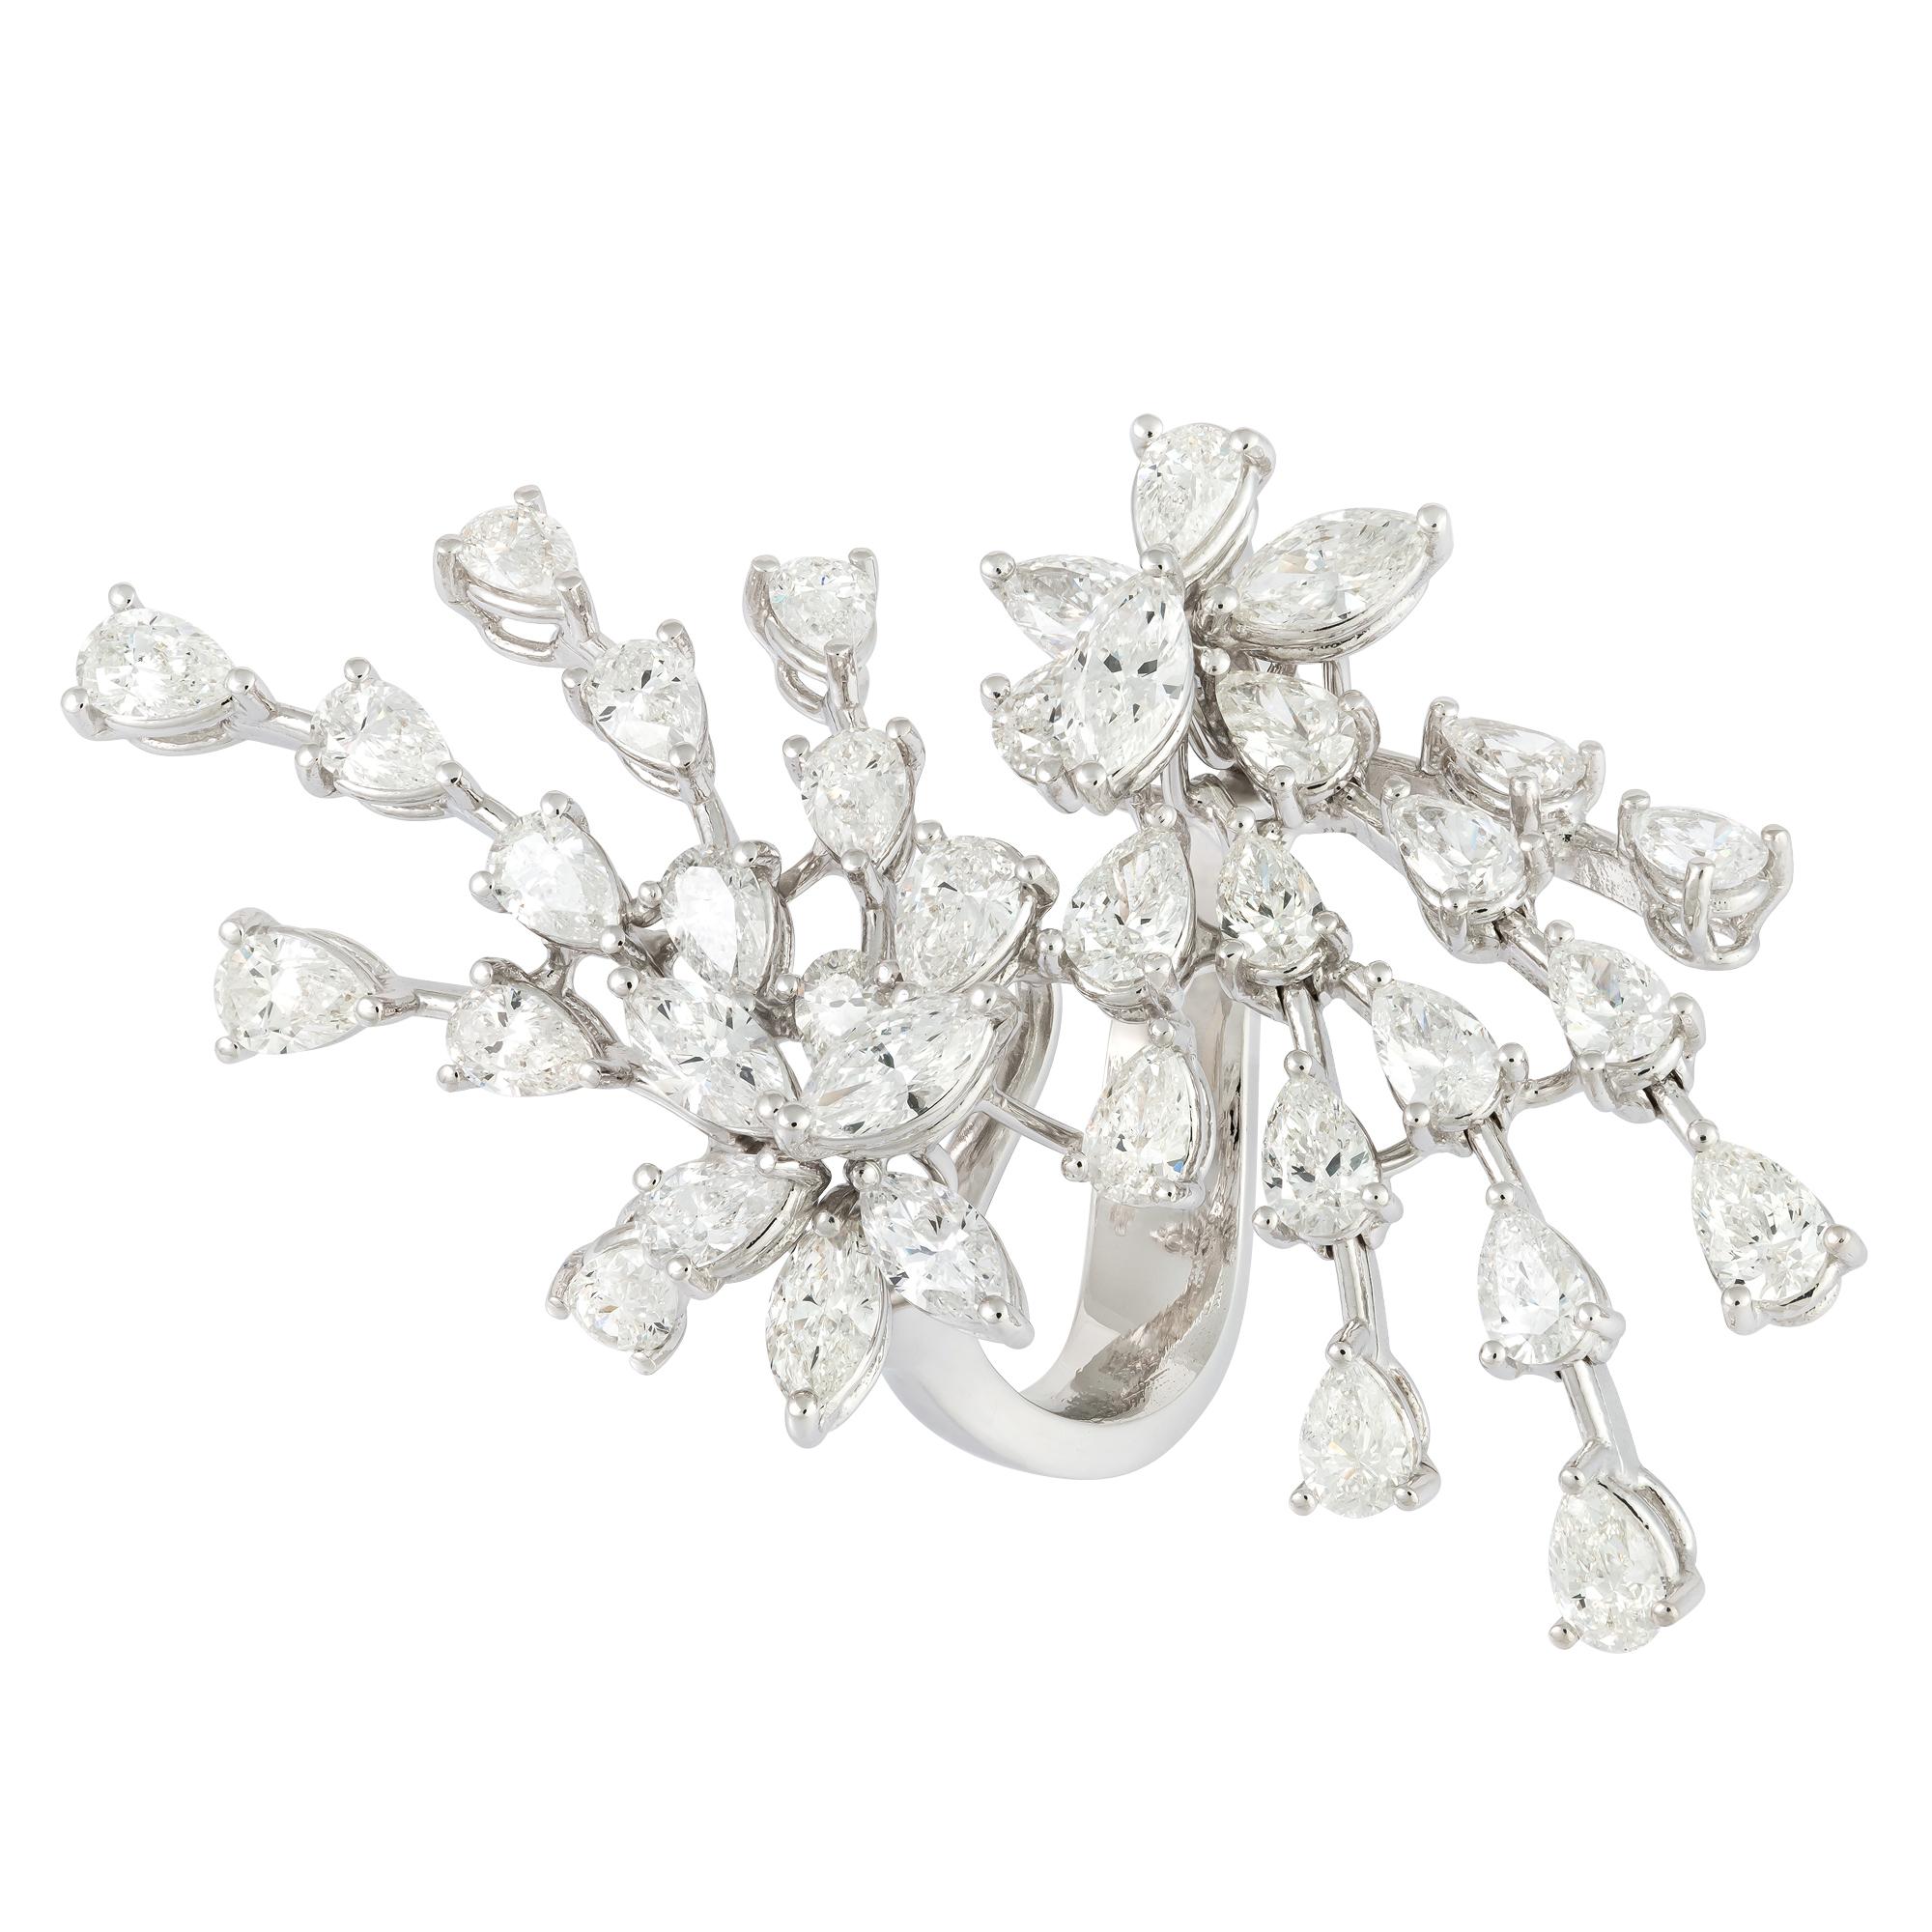 For Sale:  Sparkling White 18K Gold White Diamond Ring for Her 2